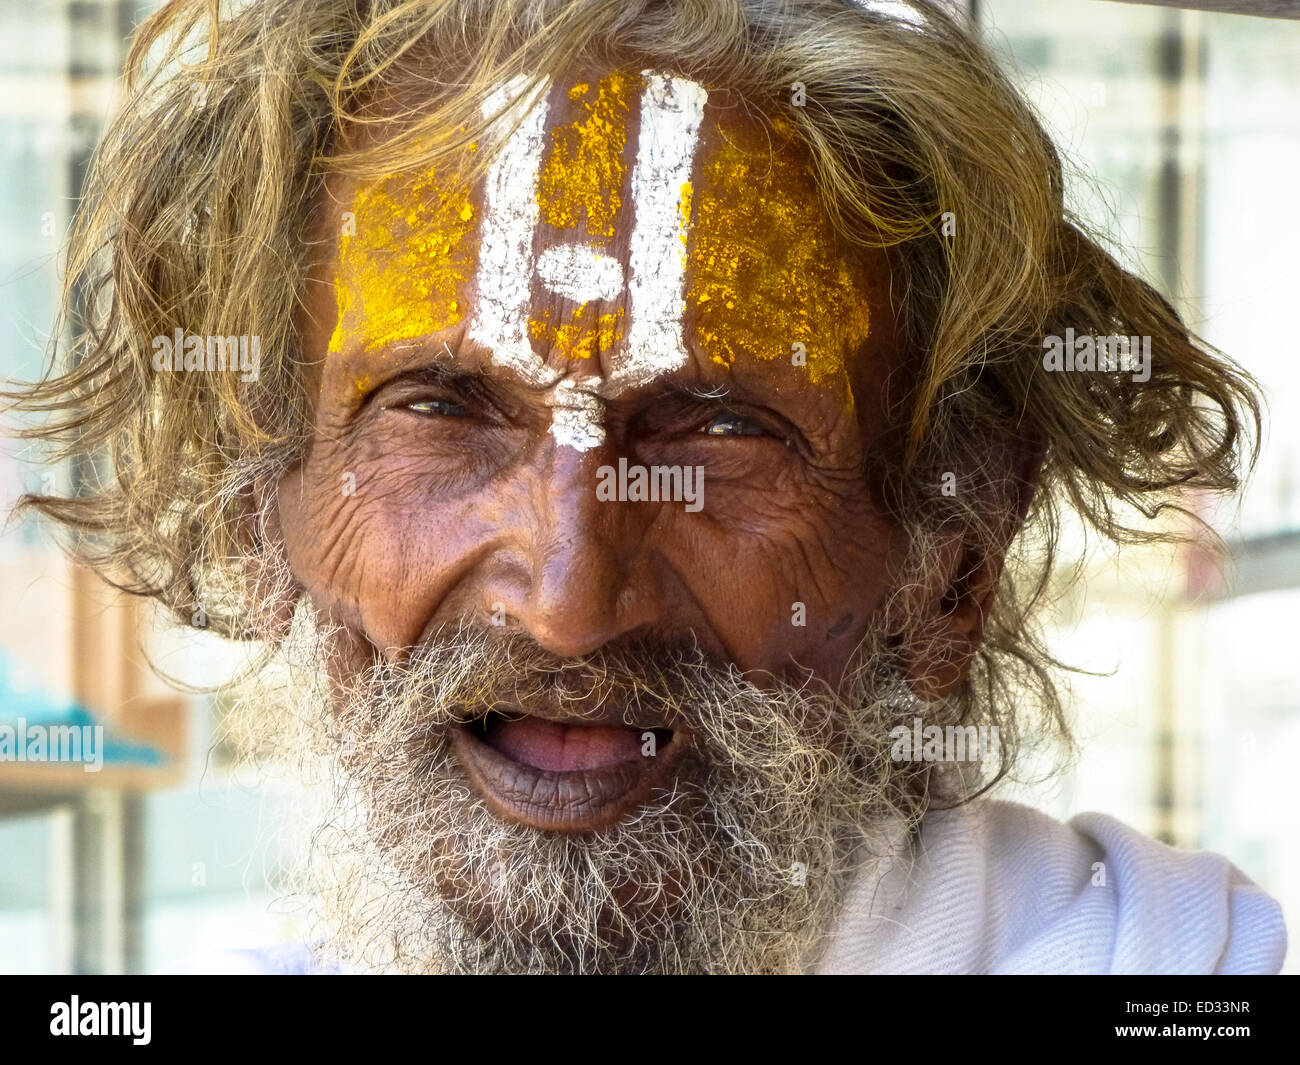 Portrait de saint homme dans le Gujarat Inde Banque D'Images